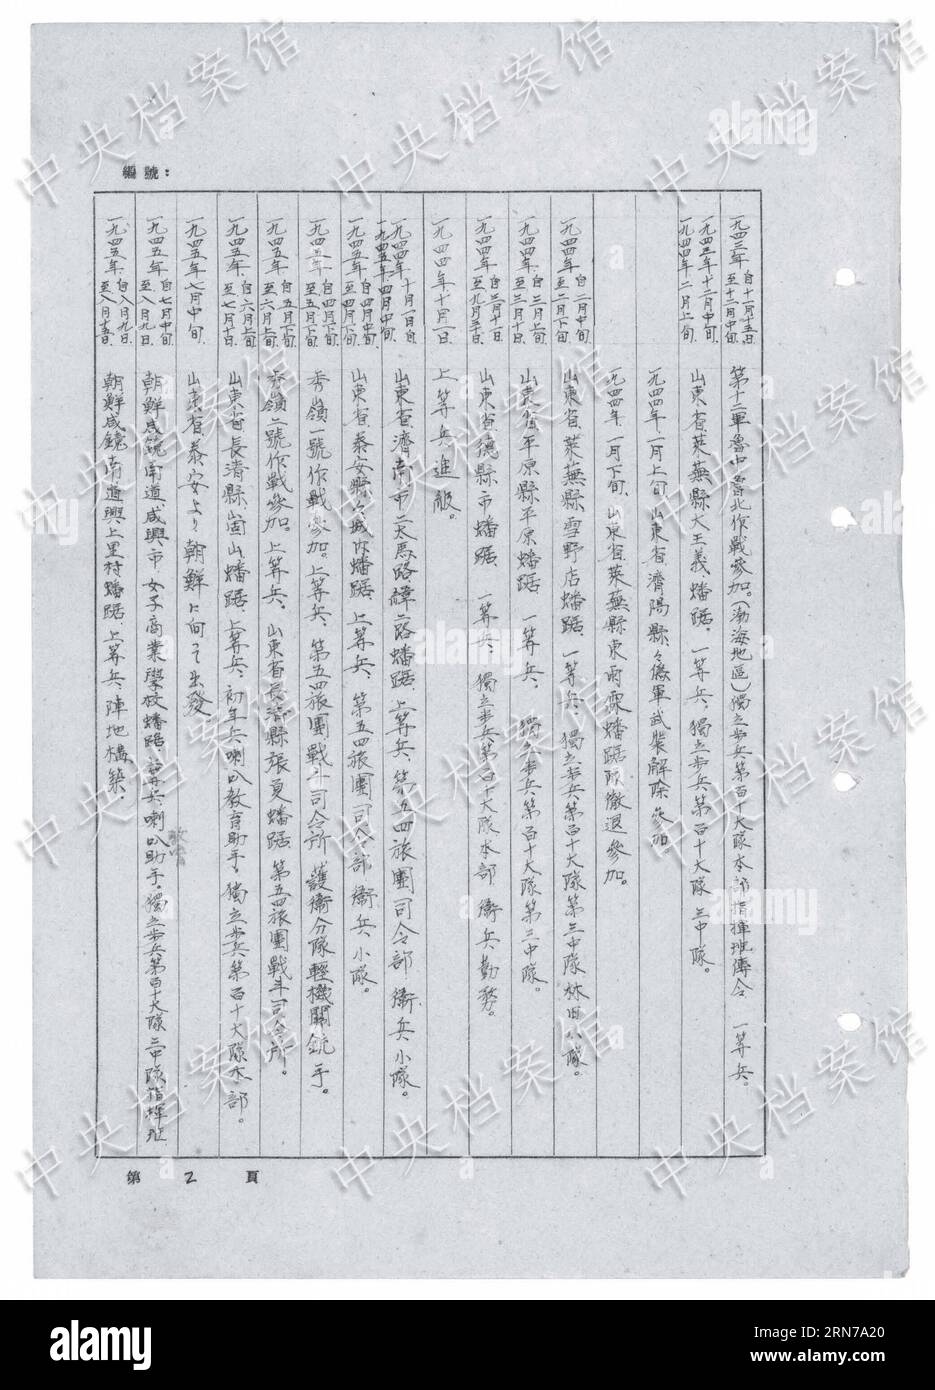 (150829) -- PEKING, 29. Aug. 2015 () -- Foto veröffentlicht am 29. Aug. 2015 von der Staatsarchivverwaltung Chinas auf ihrer Website zeigt einen Auszug aus dem handschriftlichen Geständnis des japanischen Kriegsverbrechers Masao Kanazawa. Das neunzehnte in einer Reihe von 31 handschriftlichen Geständnissen japanischer Kriegsverbrecher, die online veröffentlicht wurden, zeigt Masao Kanazawa, der sich 1943 dem japanischen Angriffskrieg gegen China anschloss und im August 1945 gefangen genommen wurde. Masao Kanazawa war von 1943 bis zu seiner Gefangennahme im August 1945 in der Provinz Shandong stationiert. Er tötete chinesische Bürger brutal über fi Stockfoto